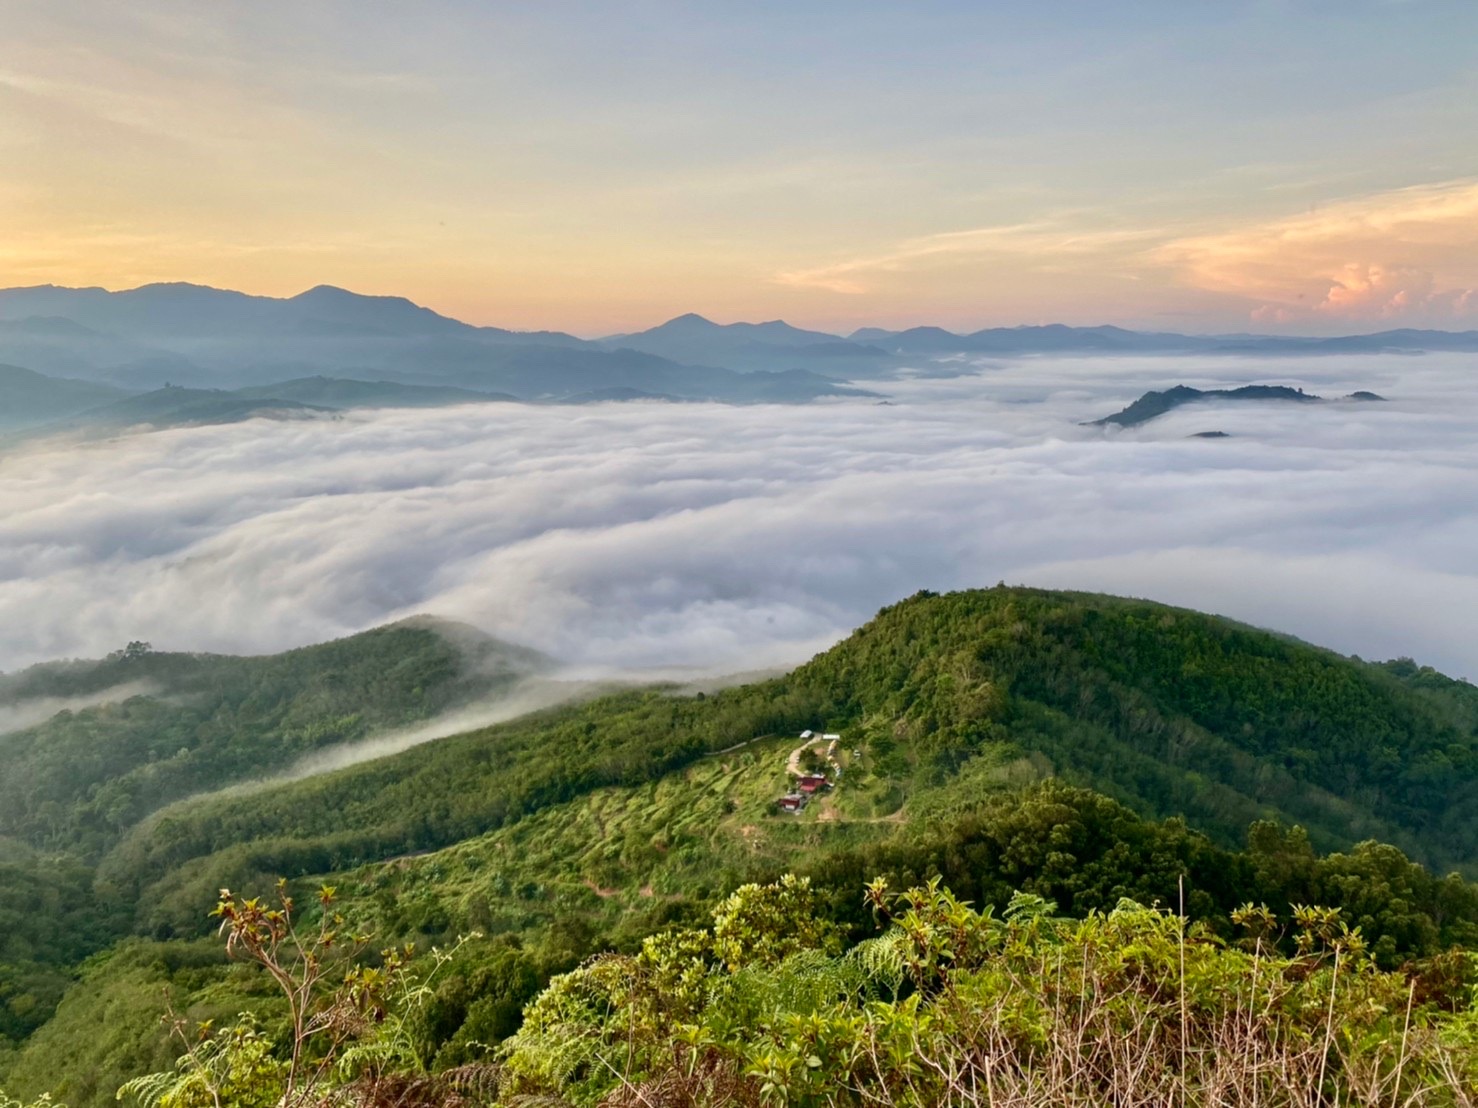 สุดยอดที่เที่ยวยะลา ประเทศไทย ปี 2566 ภูเขาหัวโล้น